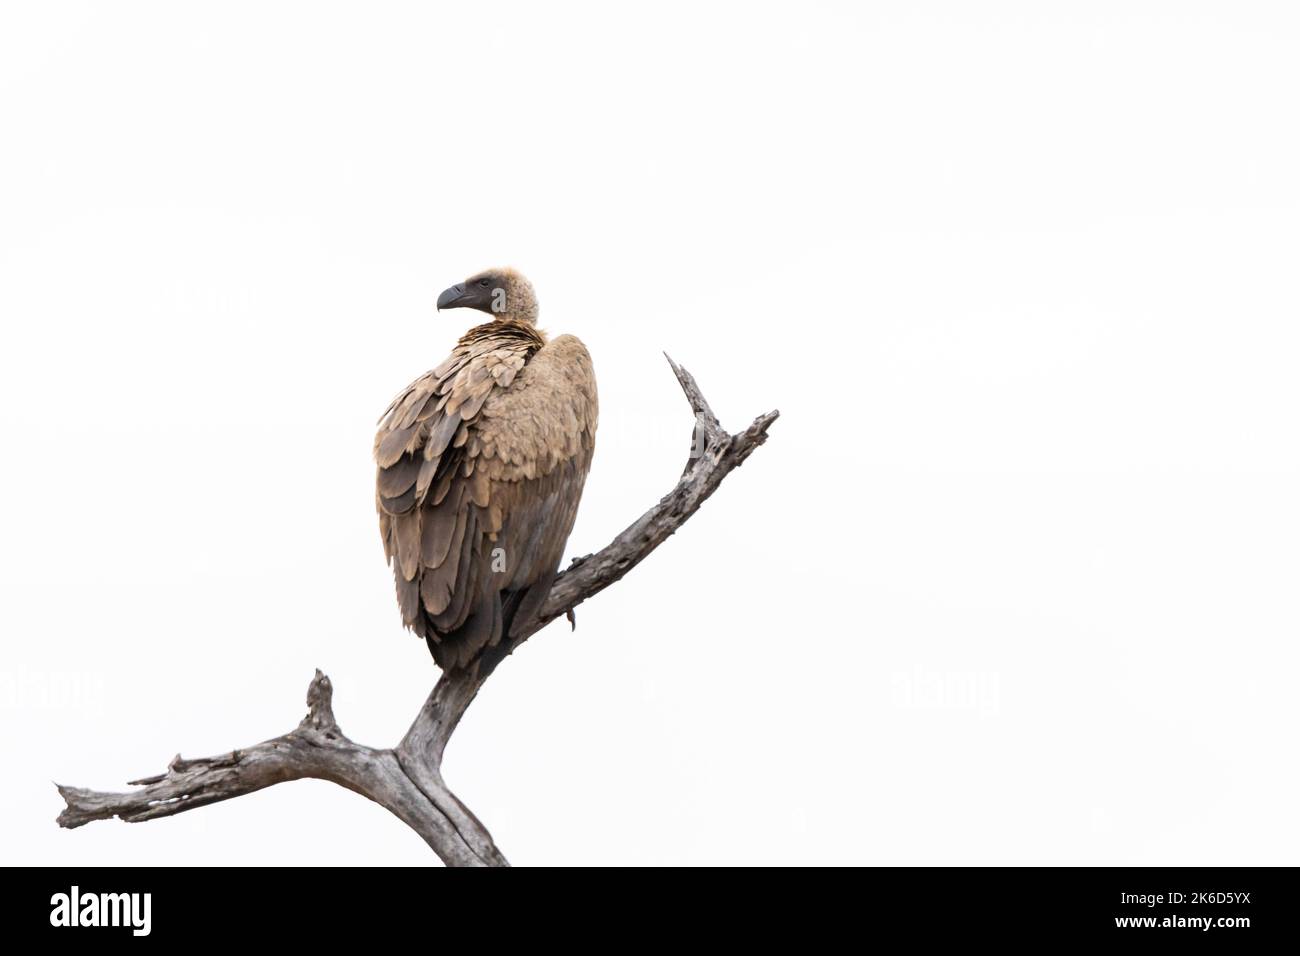 Un mantello avvoltoio su un ramo, con spazio negativo prominente nell'immagine Foto Stock